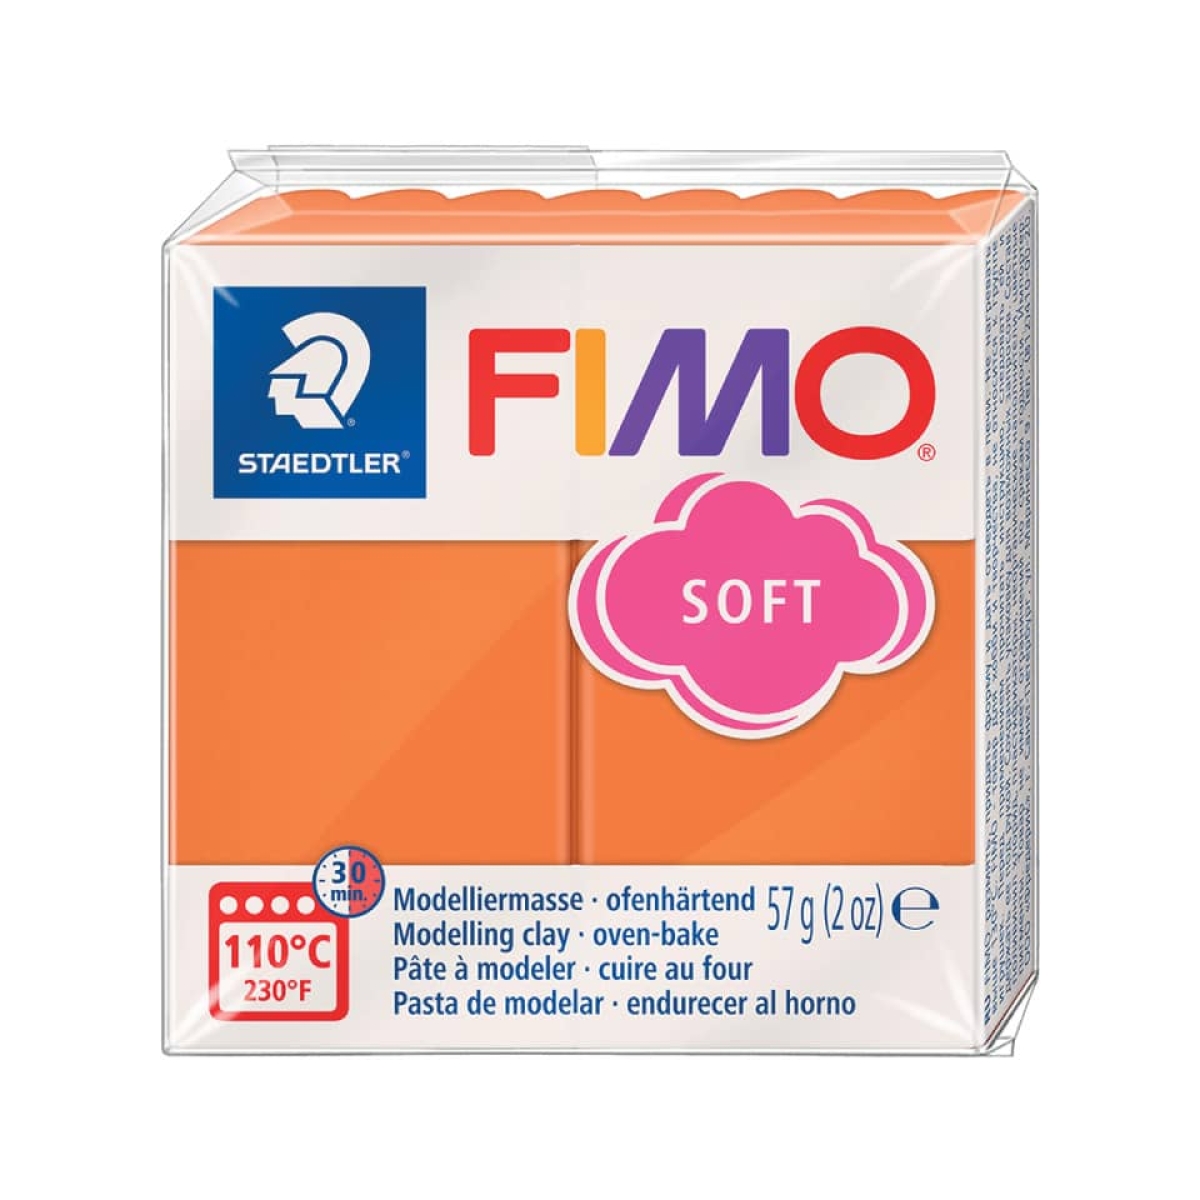 STAEDTLERModelliermasse FIMO® soft, 57 g, cognac 8020-76-Preis für 0.0570 kgArtikel-Nr: 4006608809850